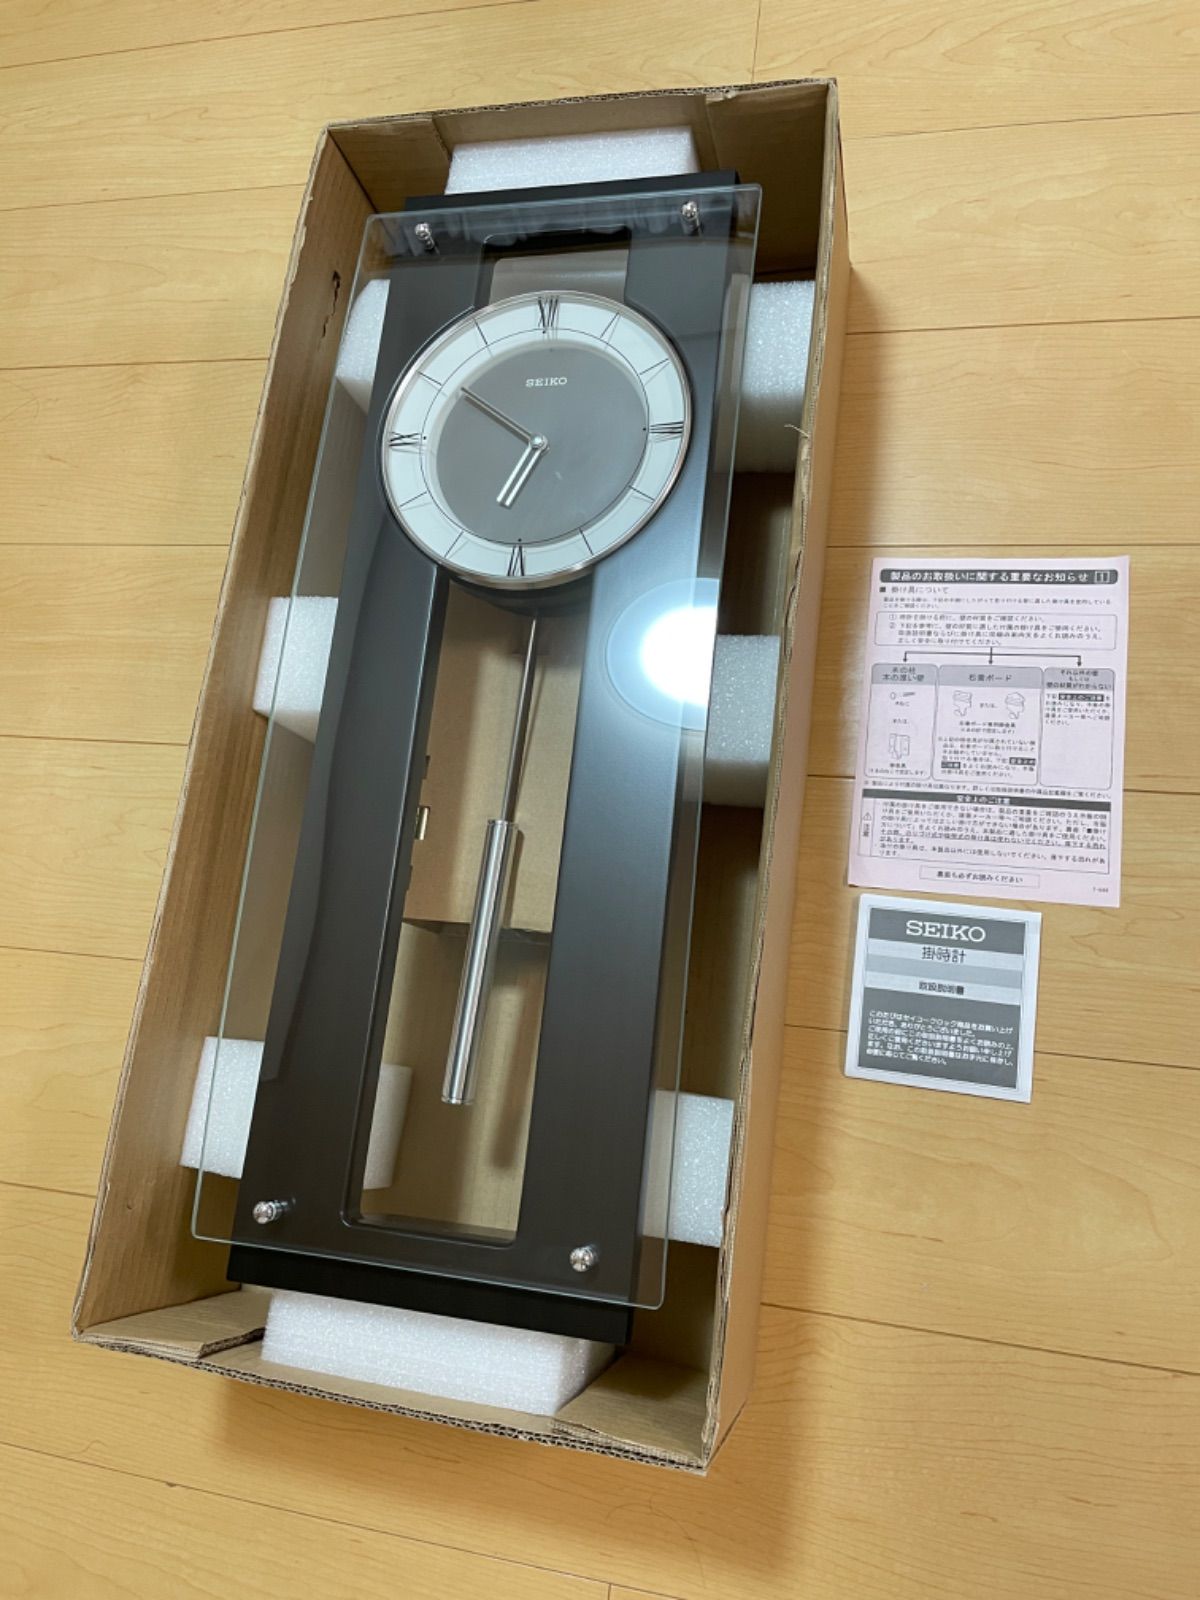 【売り正規】訳あり品 セイコー高級掛時計 定価25,000円 PH450B アナログ